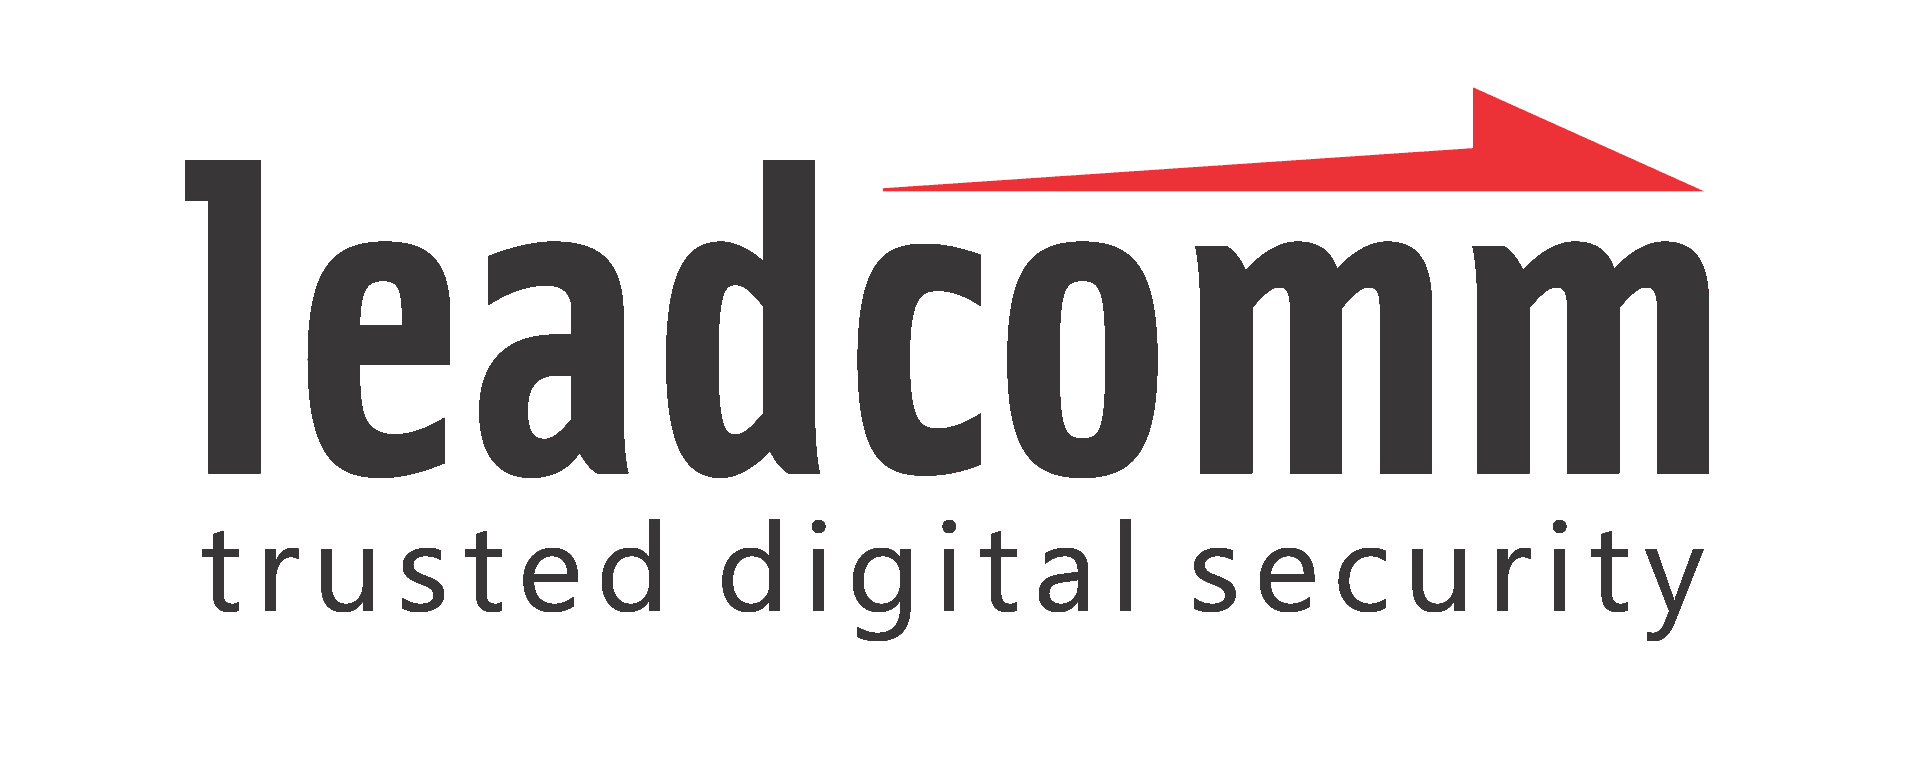 Leadcomm-Logo